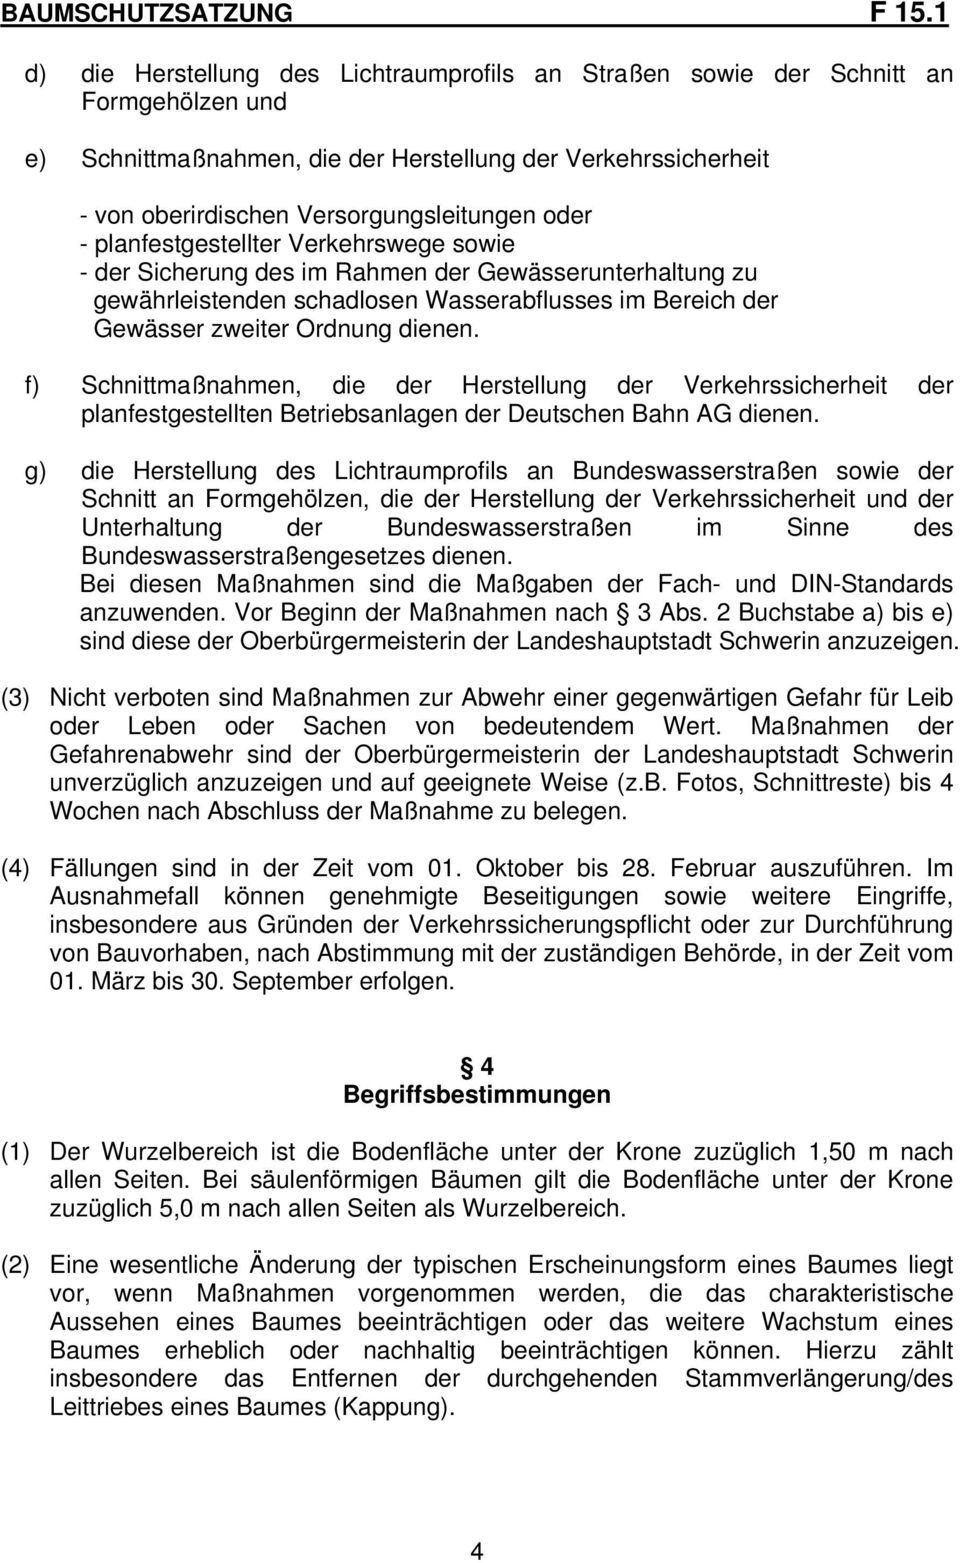 f) Schnittmaßnahmen, die der Herstellung der Verkehrssicherheit der planfestgestellten Betriebsanlagen der Deutschen Bahn AG dienen.